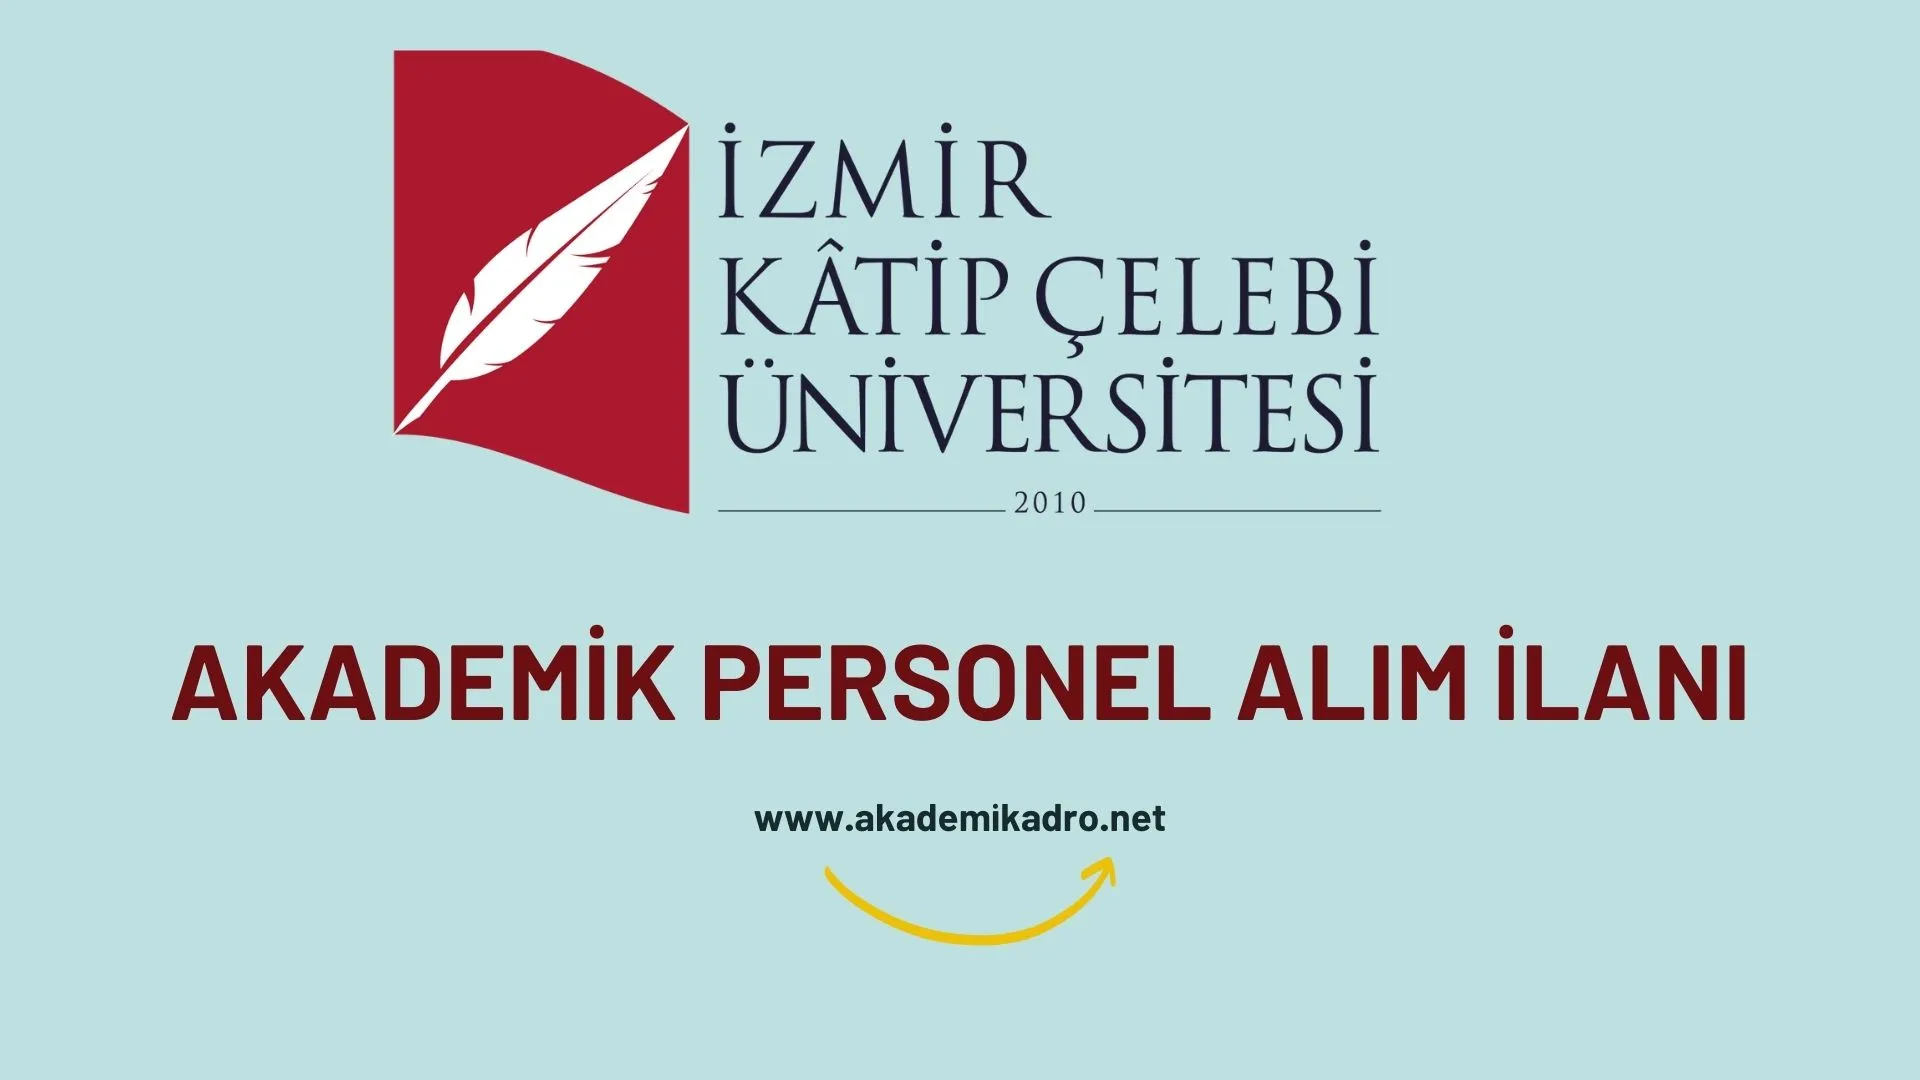 İzmir Kâtip Çelebi Üniversitesi birçok alandan 22 öğretim üyesi alacak.